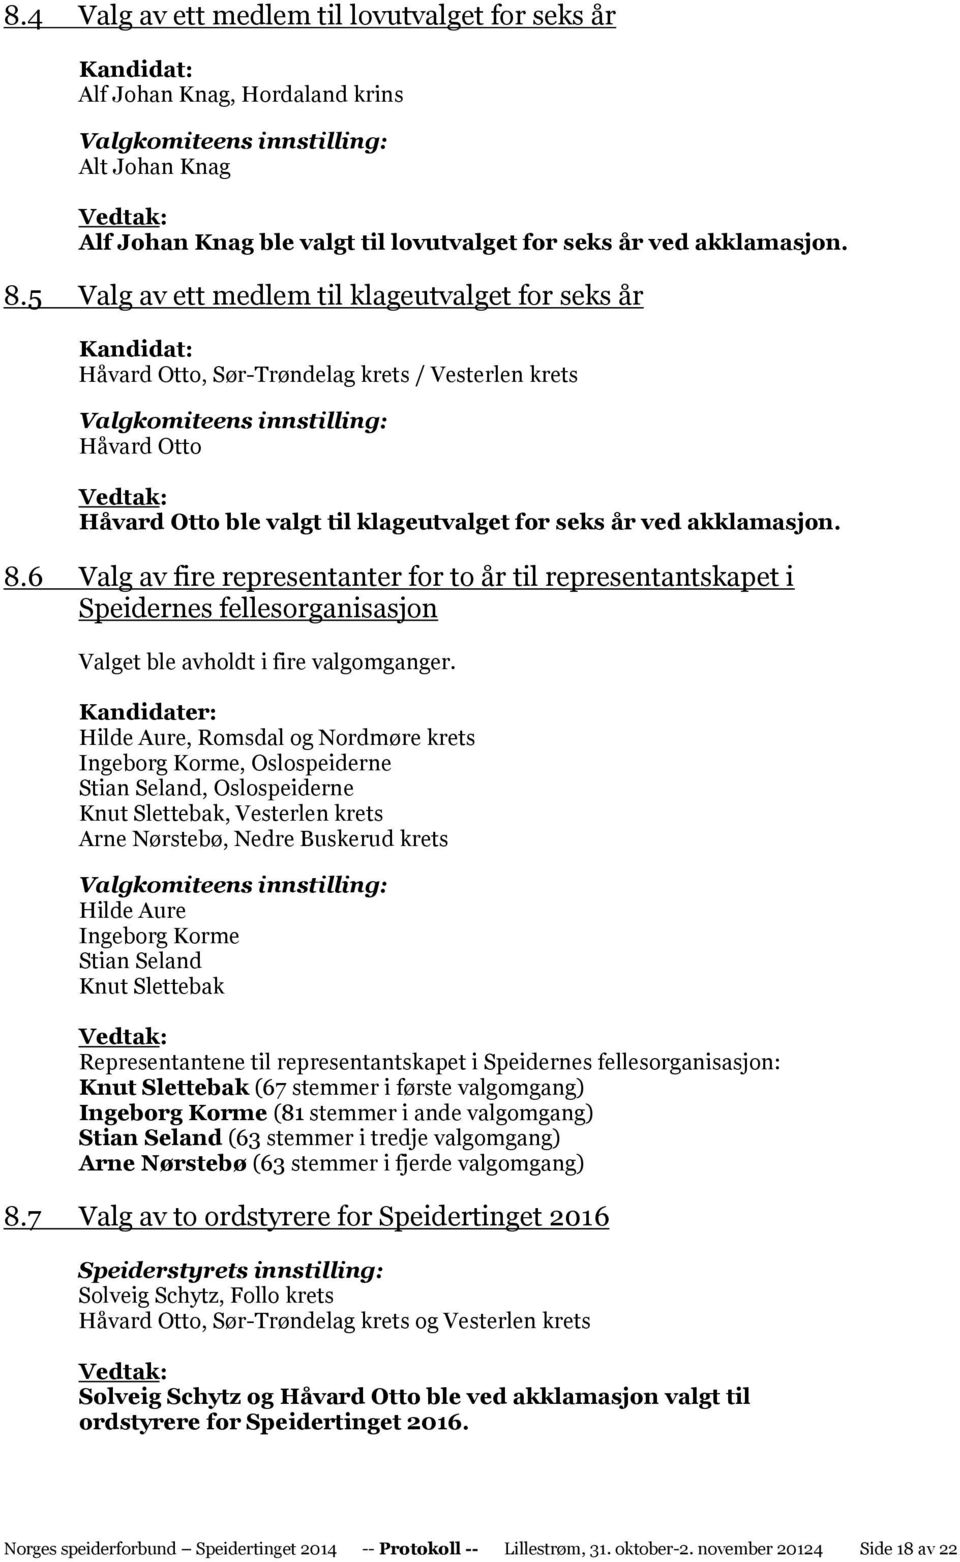 5 Valg av ett medlem til klageutvalget for seks år Kandidat: Håvard Otto, Sør-Trøndelag krets / Vesterlen krets Valgkomiteens innstilling: Håvard Otto Håvard Otto ble valgt til klageutvalget for seks